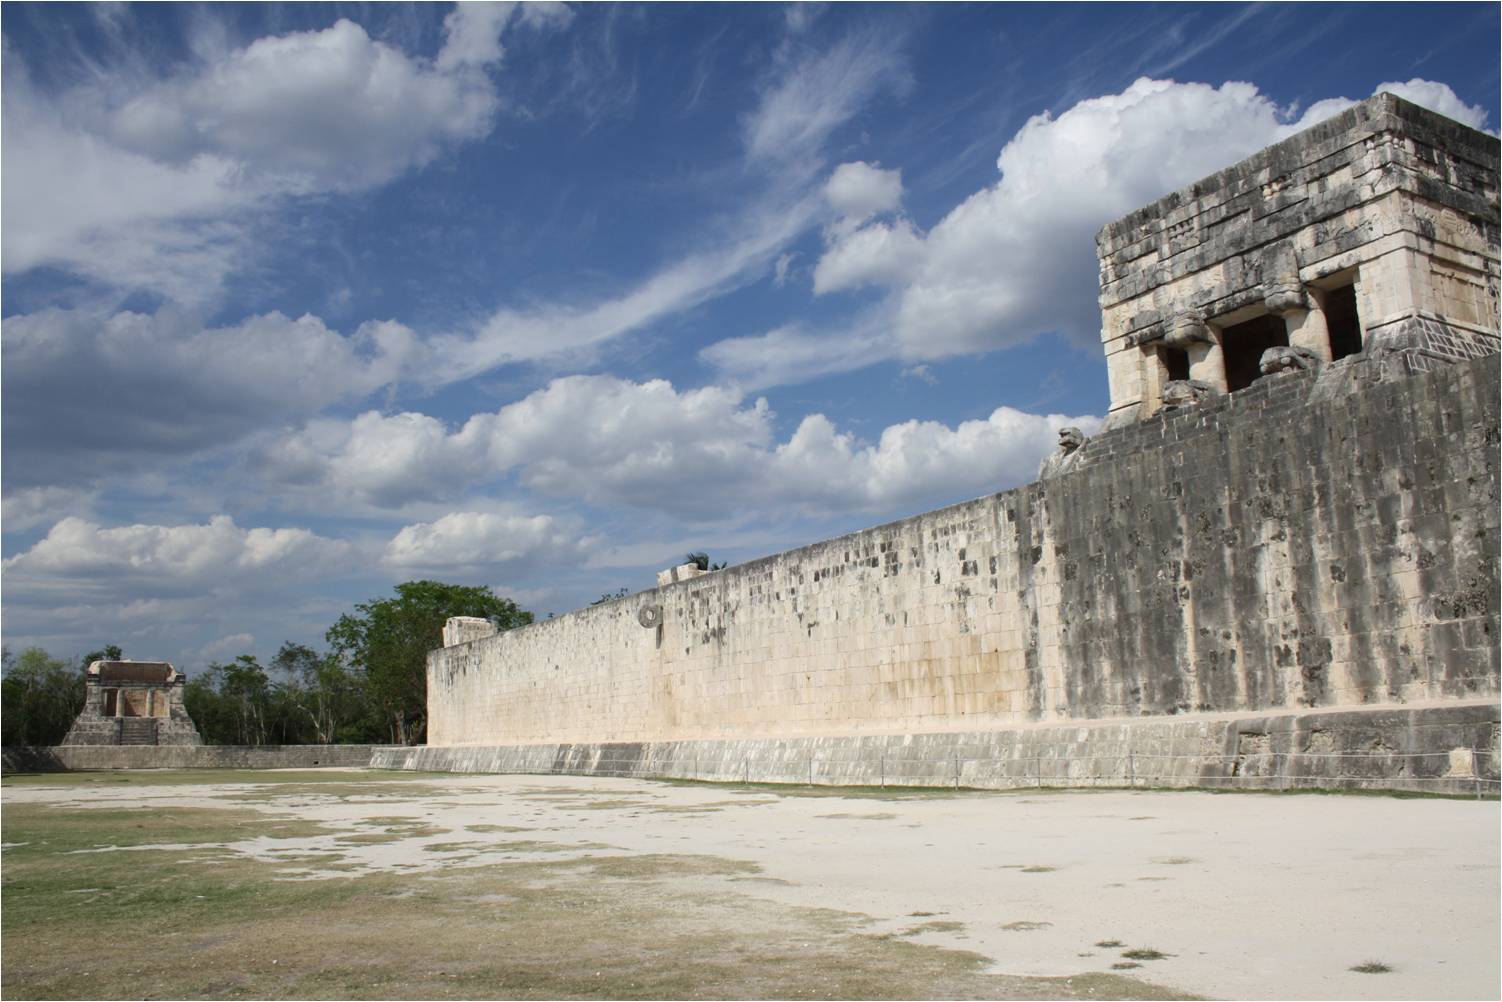 Mayan ball court at Chichén Itzá